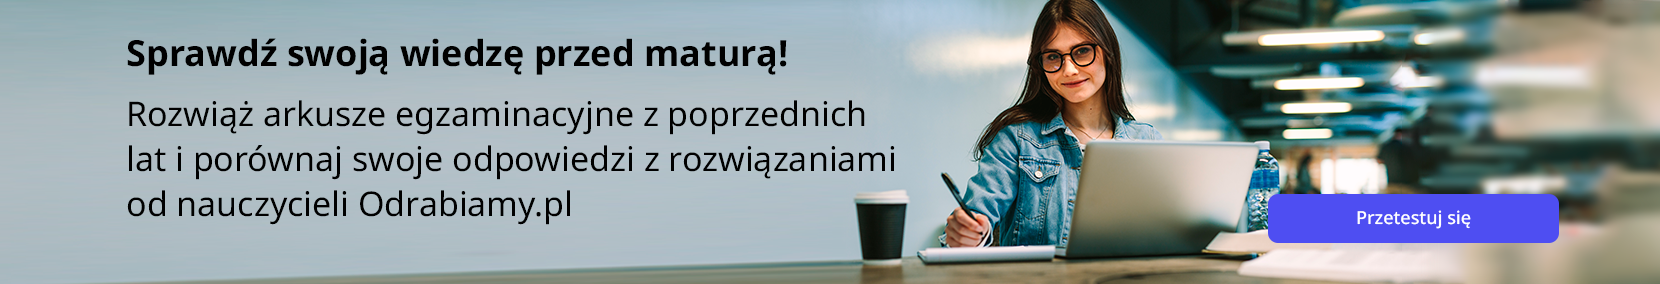 Sprawdź swoją wiedzę przed maturą! Rozwiąż arkusze egzaminacyjne z poprzednich lat i porównaj swoje odpowiedzi z rozwiązaniami od nauczycieli Odrabiamy.pl. Strona główna odrabiamy - odrabiamy.pl